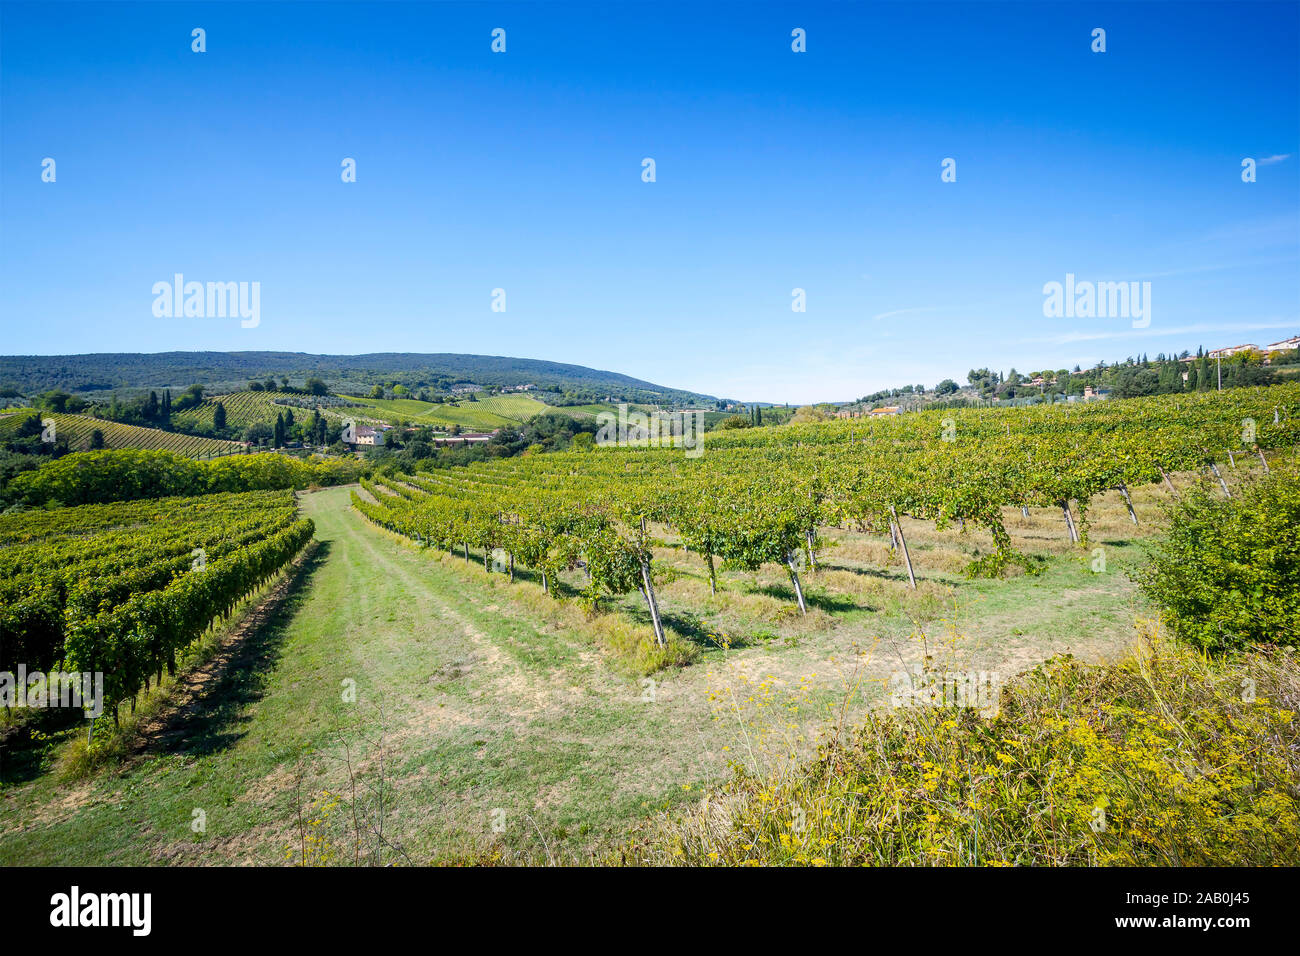 Ein schoenes, idyllisches Weinanbaugebiet in Italien Stock Photo